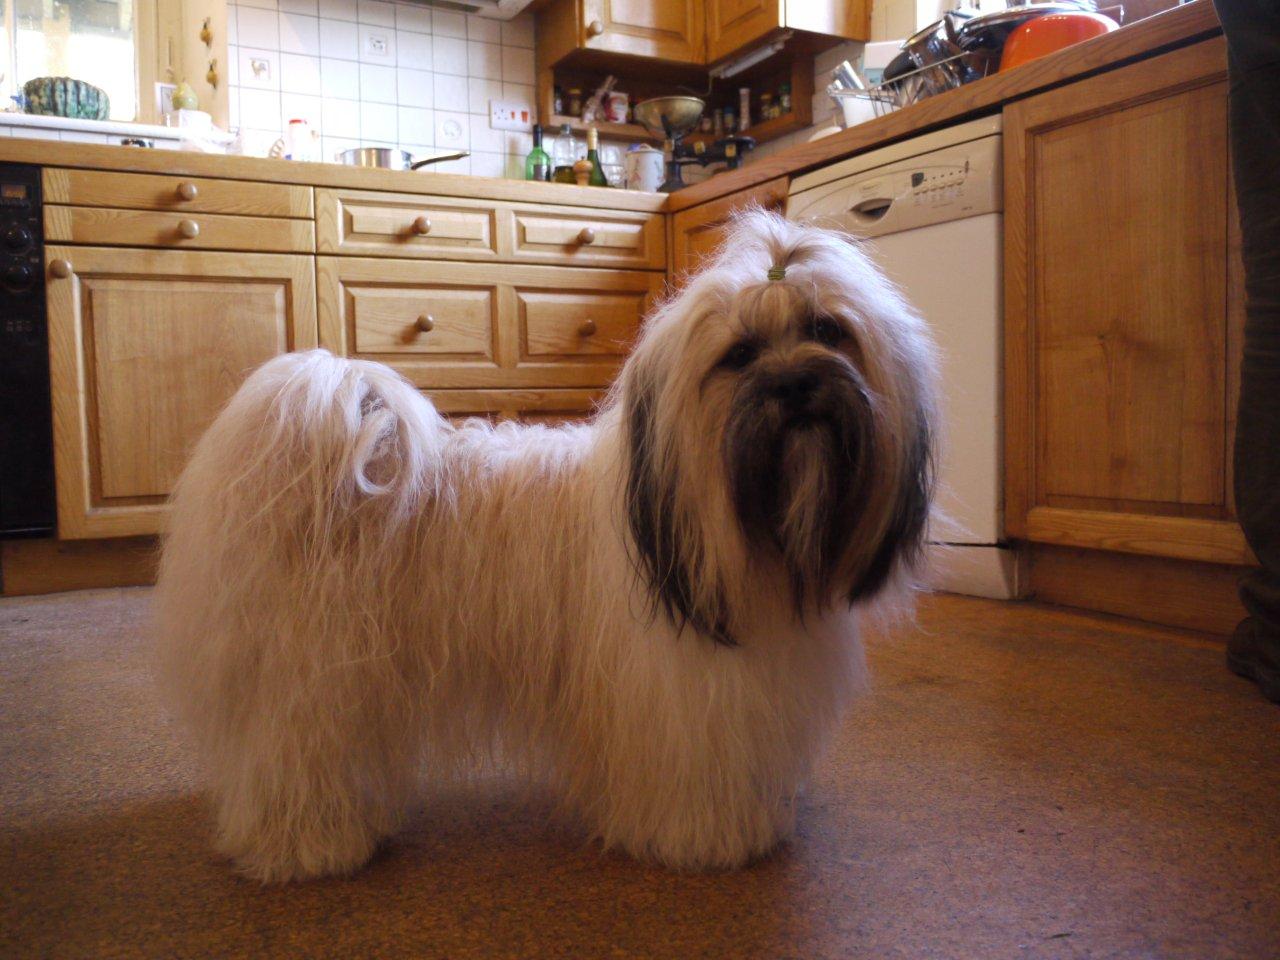 lhasa apso dogs long hair